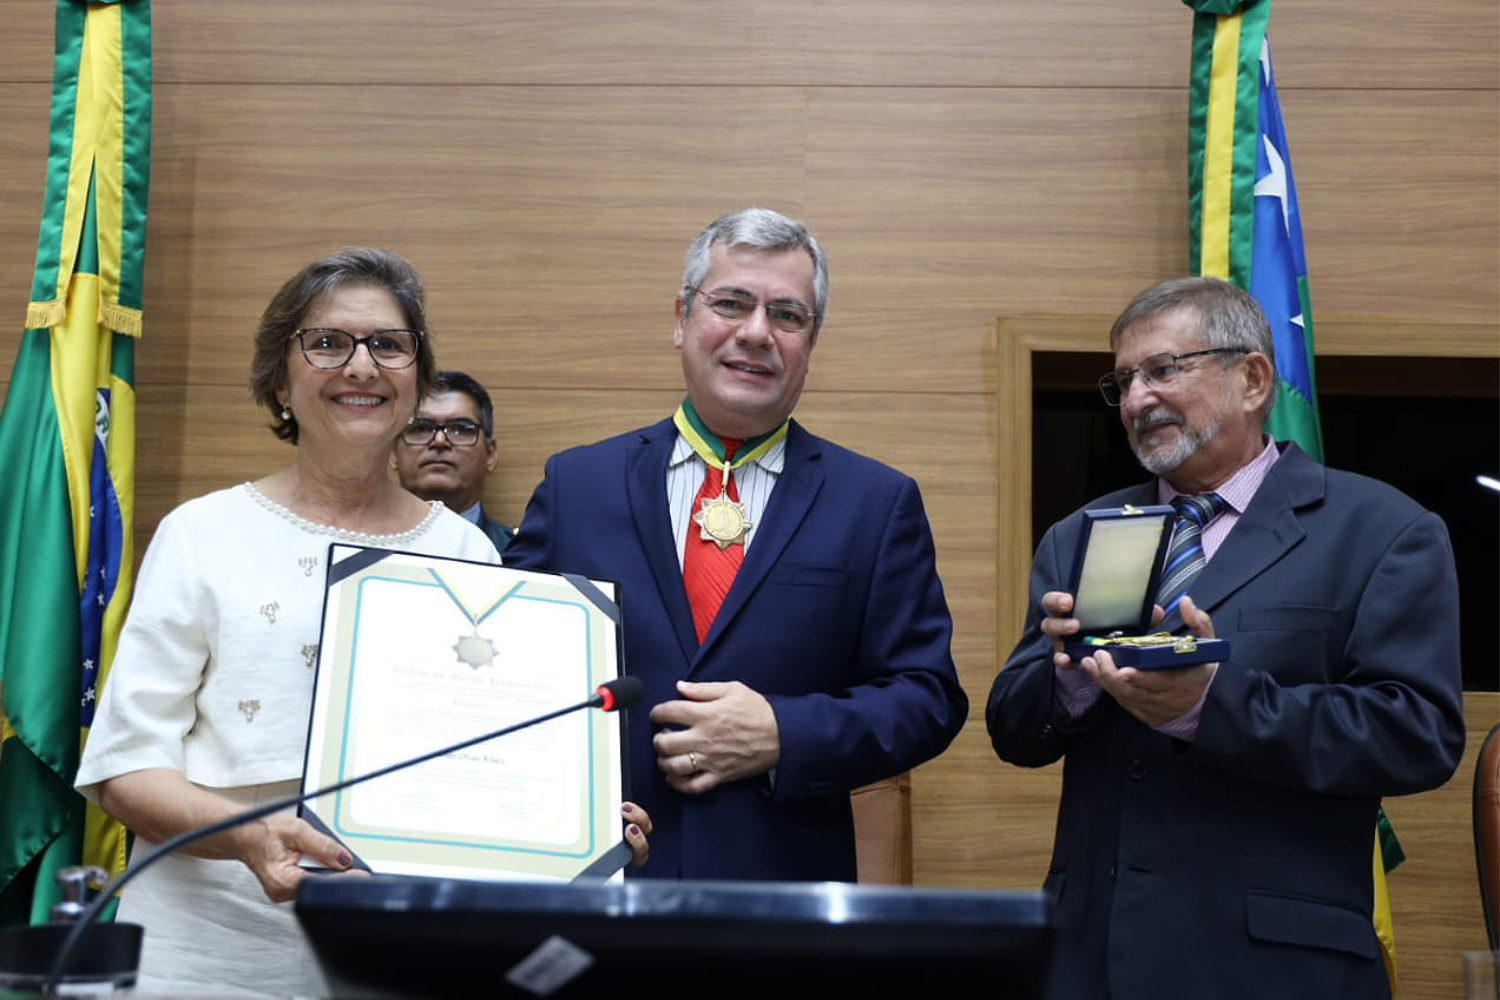 Professora Teresinha Oliva, filha de João Oliva, recebeu a homenagem (Fotos: Joel Luiz- Agência de Notícias Alese)